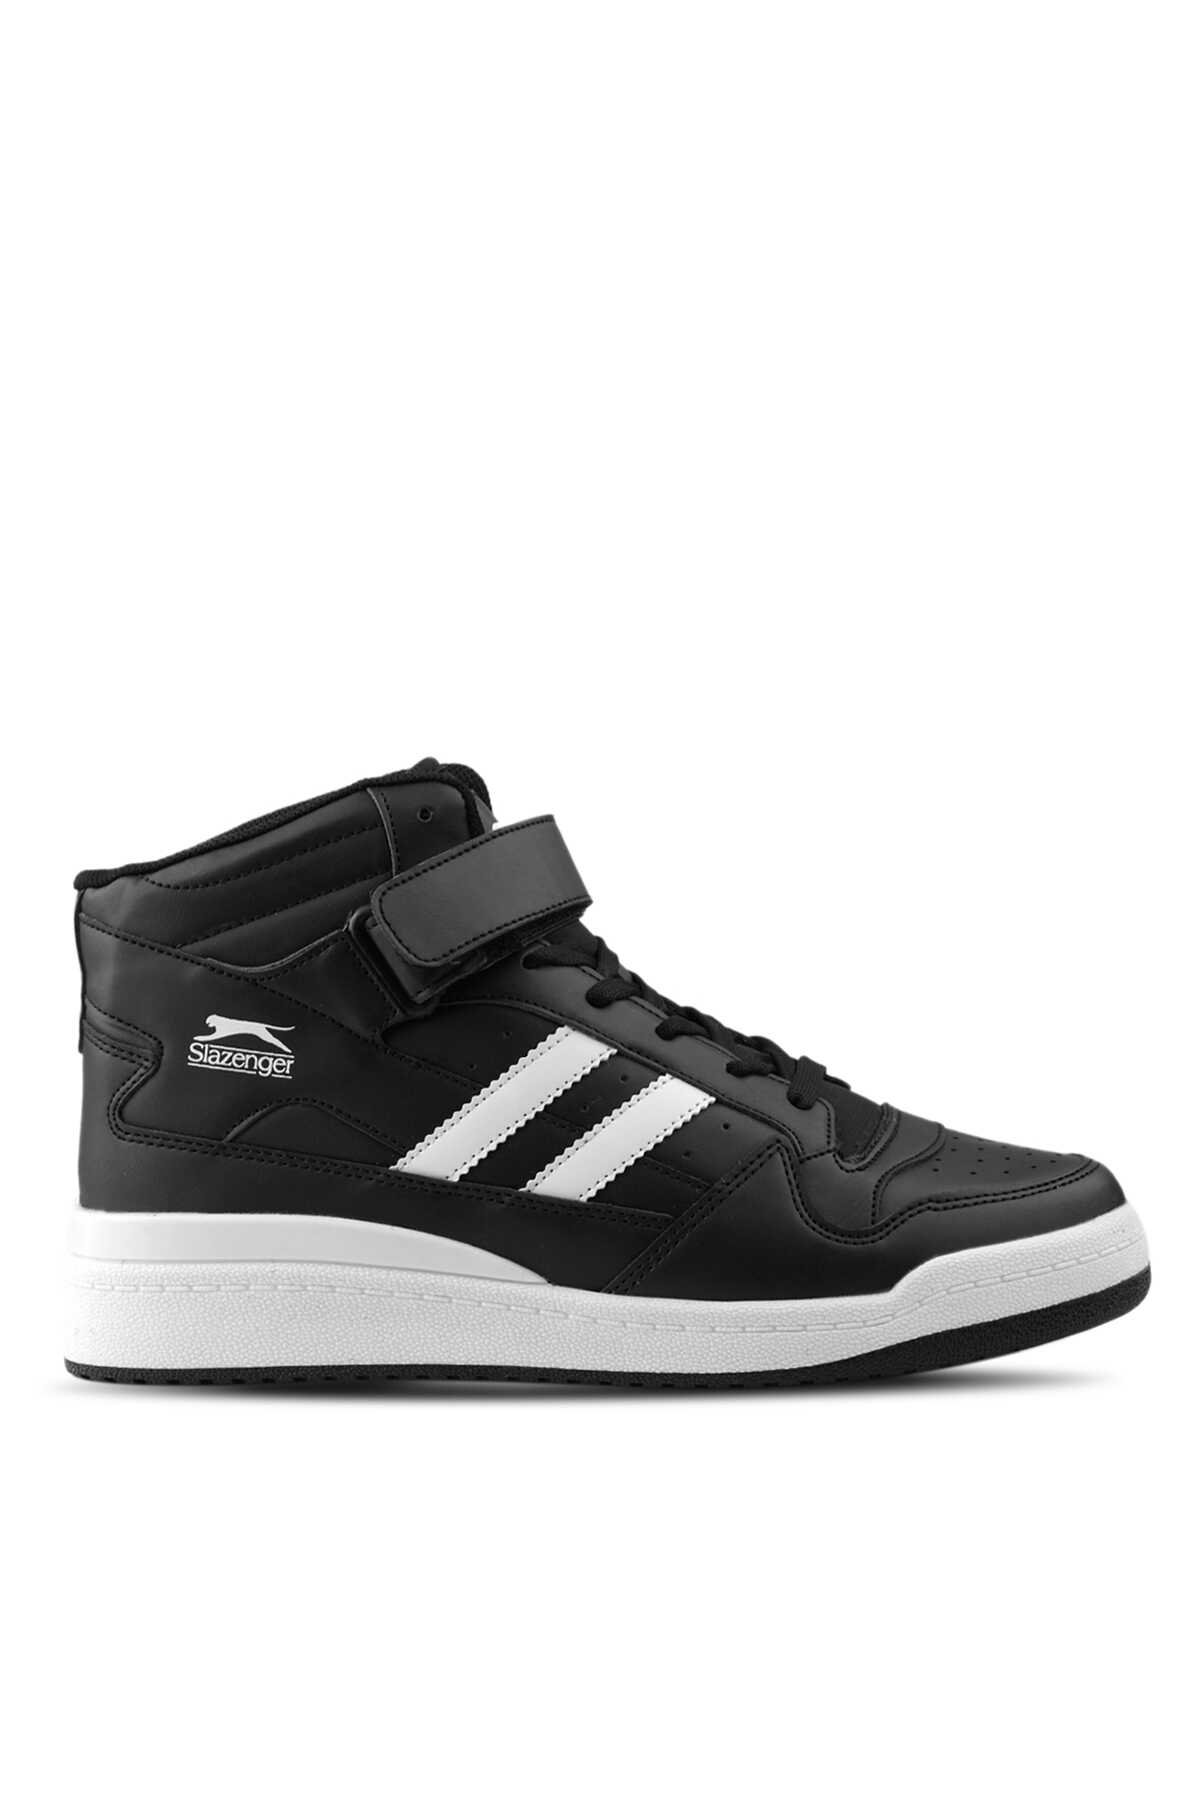 Slazenger - Slazenger BAMBOO Sneaker Erkek Ayakkabı Siyah / Beyaz